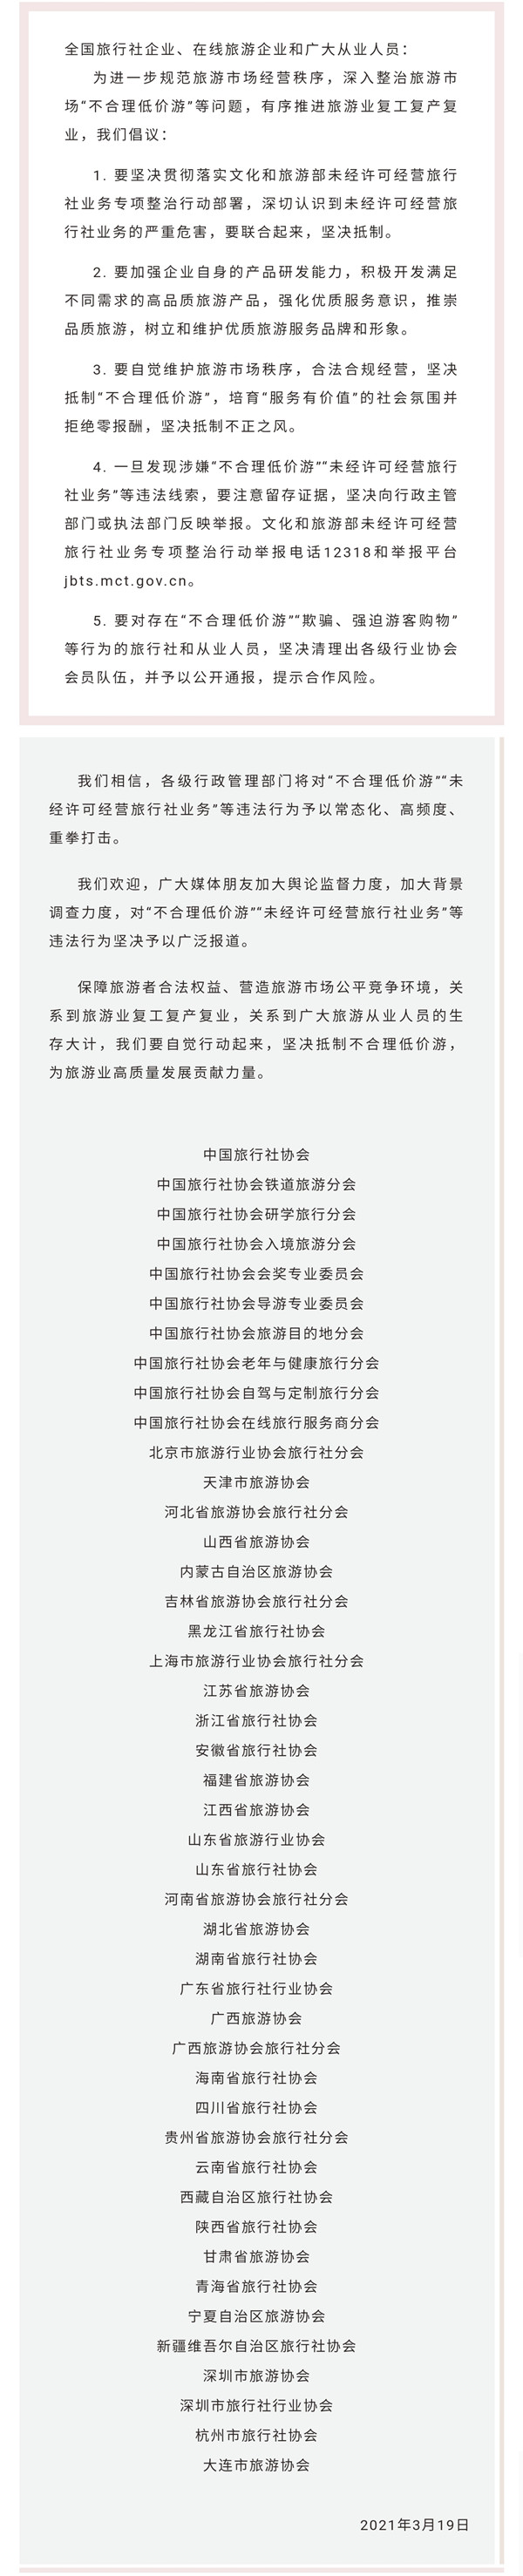 中国旅行社协会联合云南等省区旅行社协会发声：坚决抵制“不合理低价游”